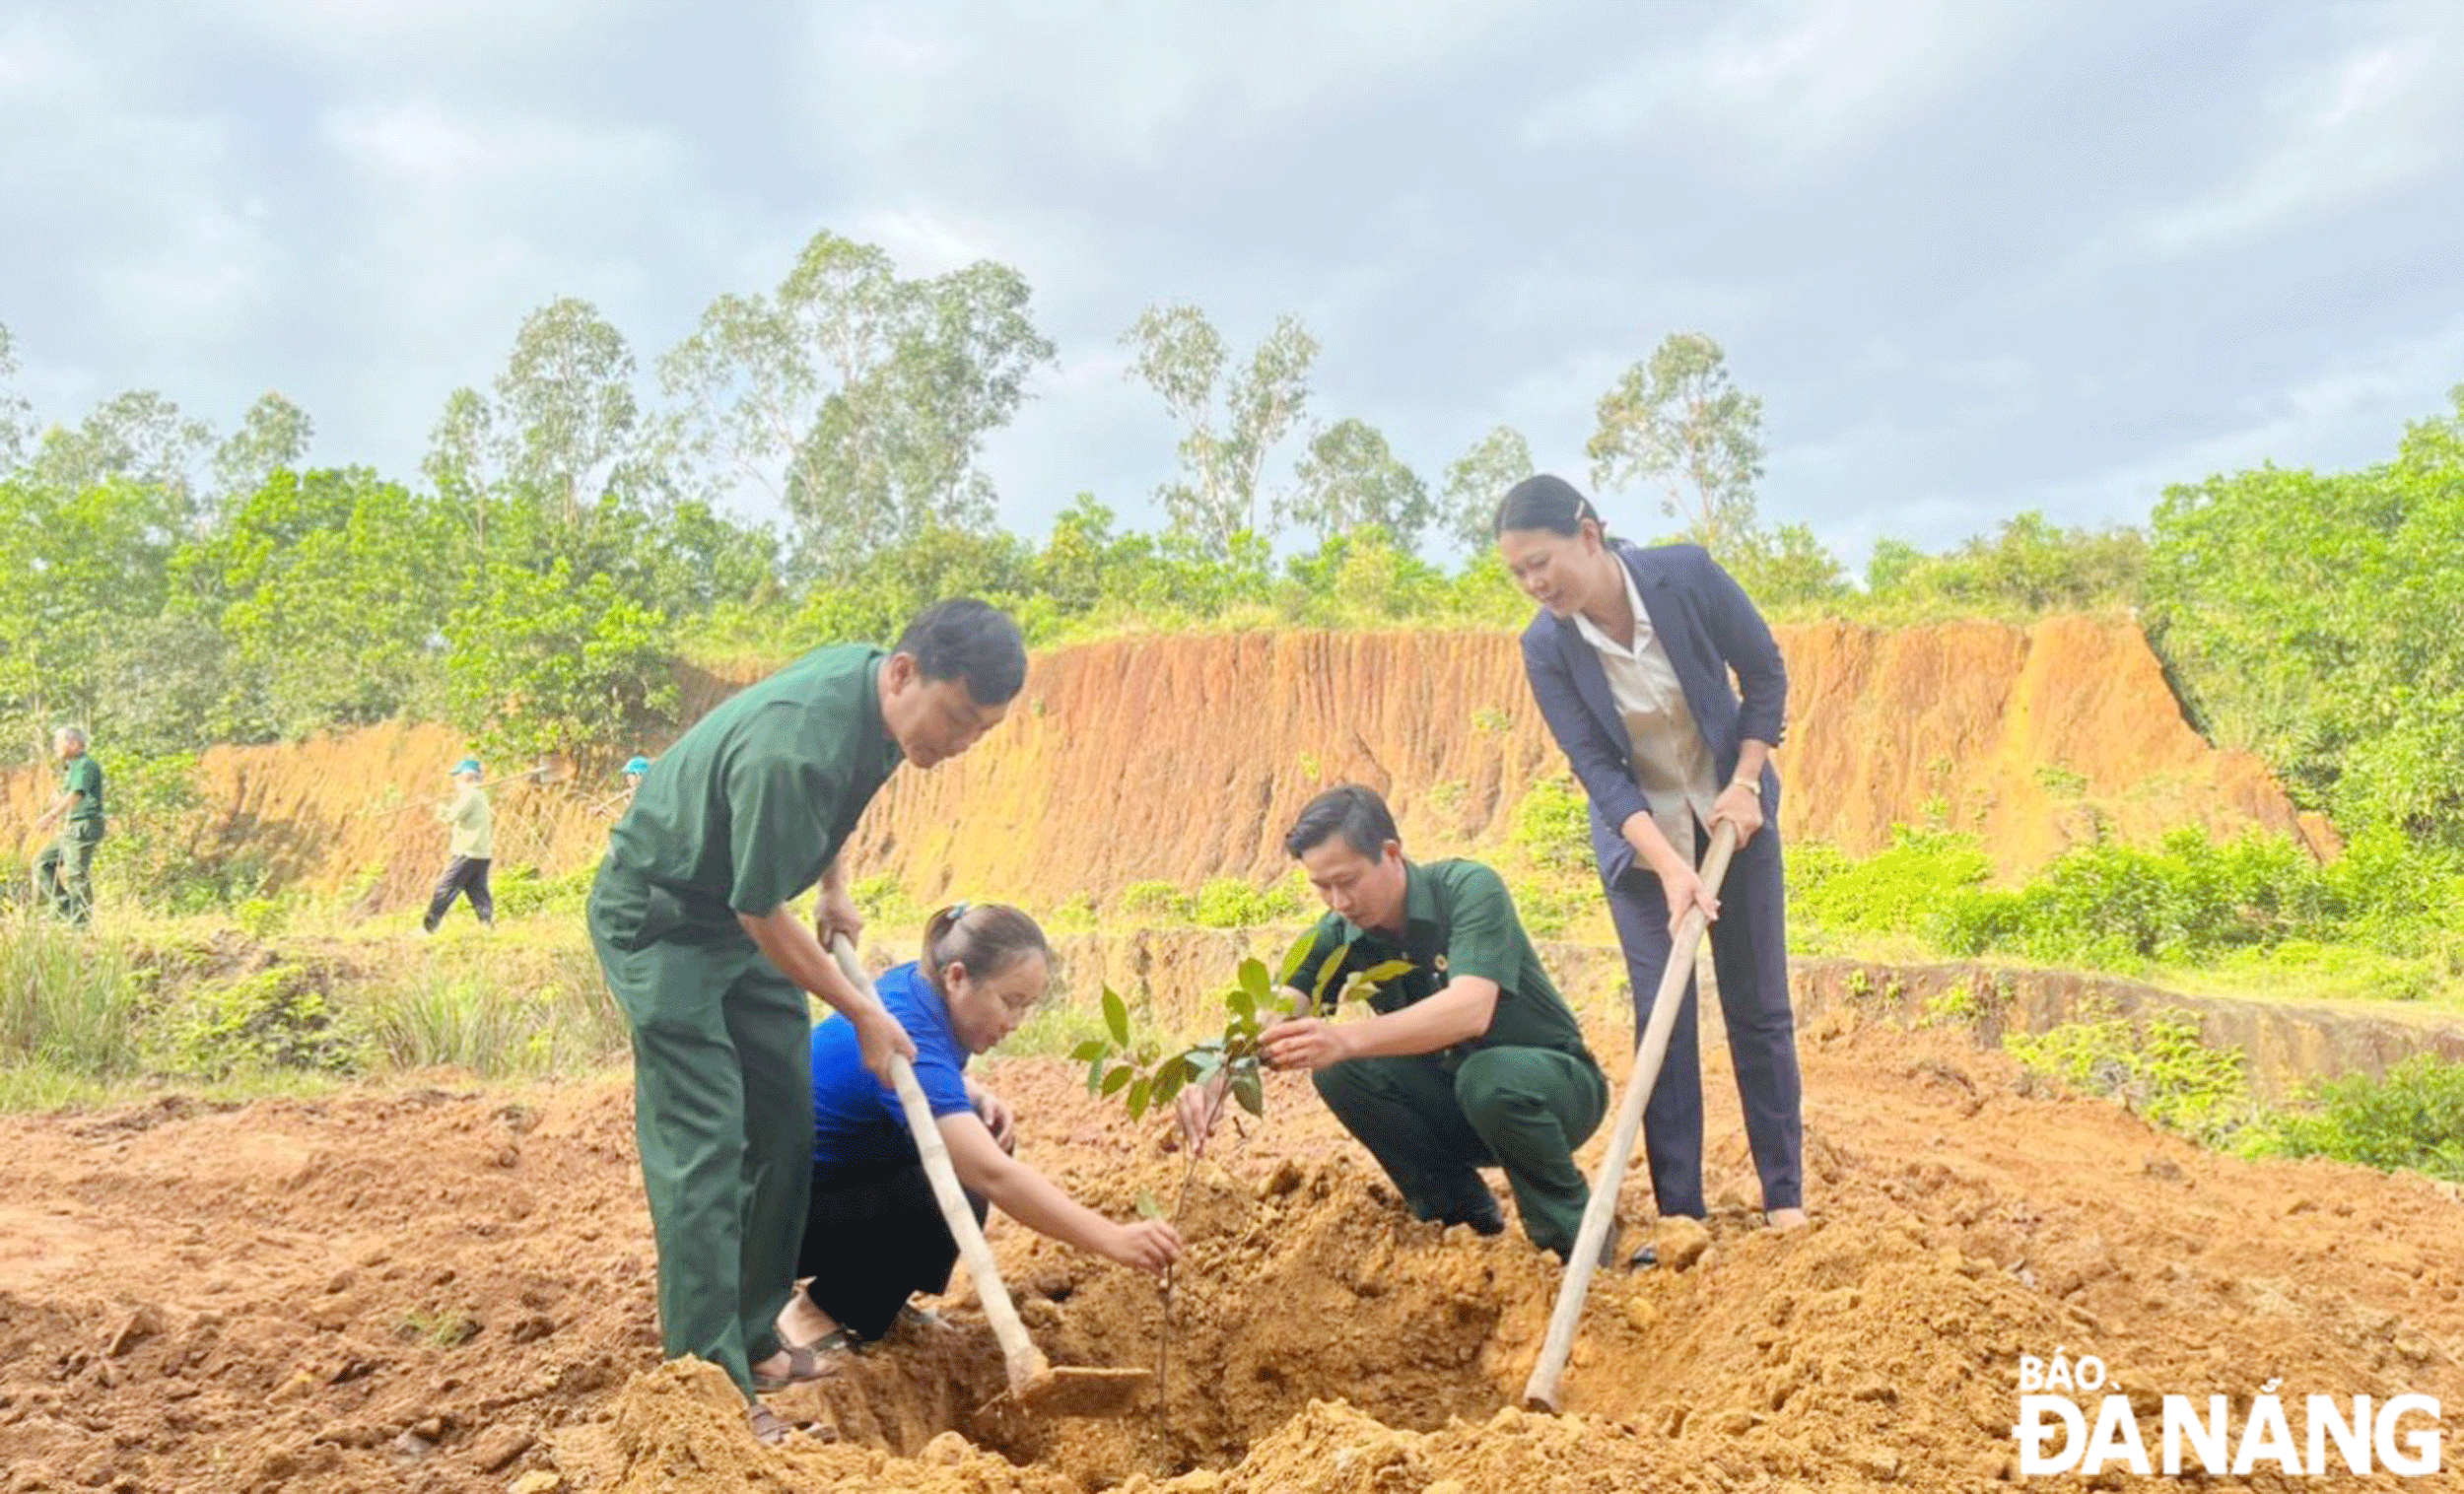 Đoàn thanh niên, Hội Cựu chiến binh xã Hòa Nhơn ra quân trồng cây phủ xanh đồi trọc, thực hiện đề án “Trồng một tỷ cây xanh giai đoạn 2021-2025”   của Chính phủ tại thôn Hòa Khương Đông (xã Hòa Nhơn). Ảnh: HOÀNG HIỆP